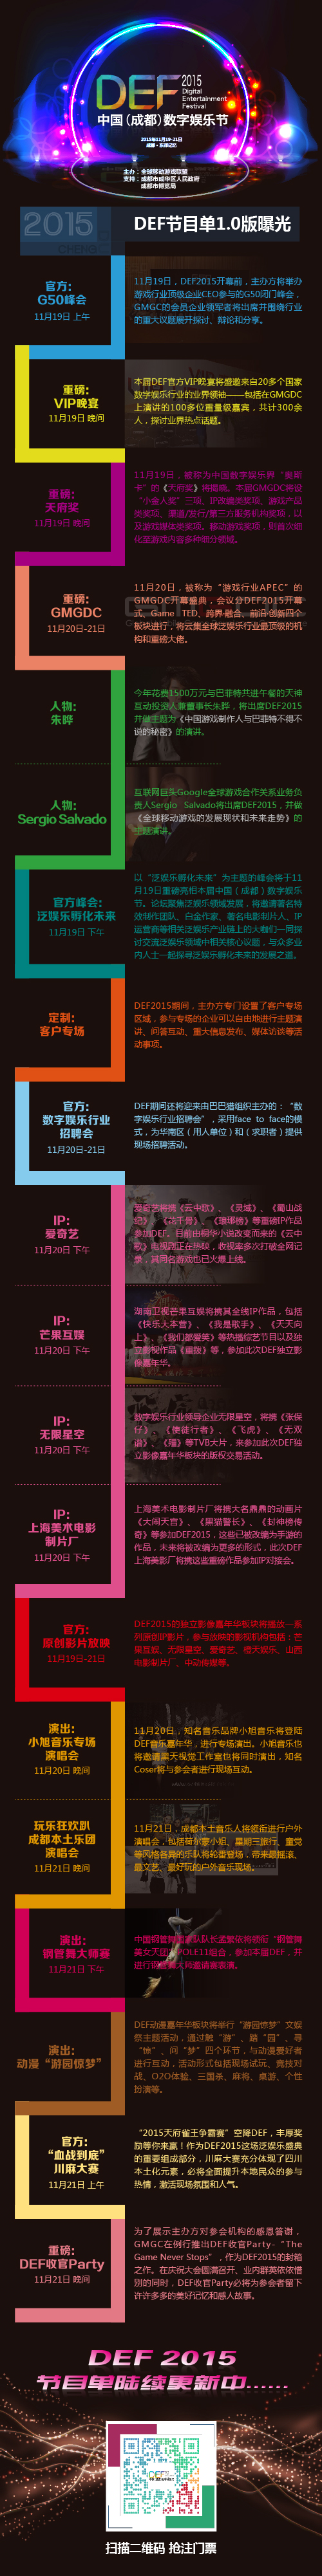 中国数字娱乐节精彩节目单曝光 门票开放注册[多图]图片2